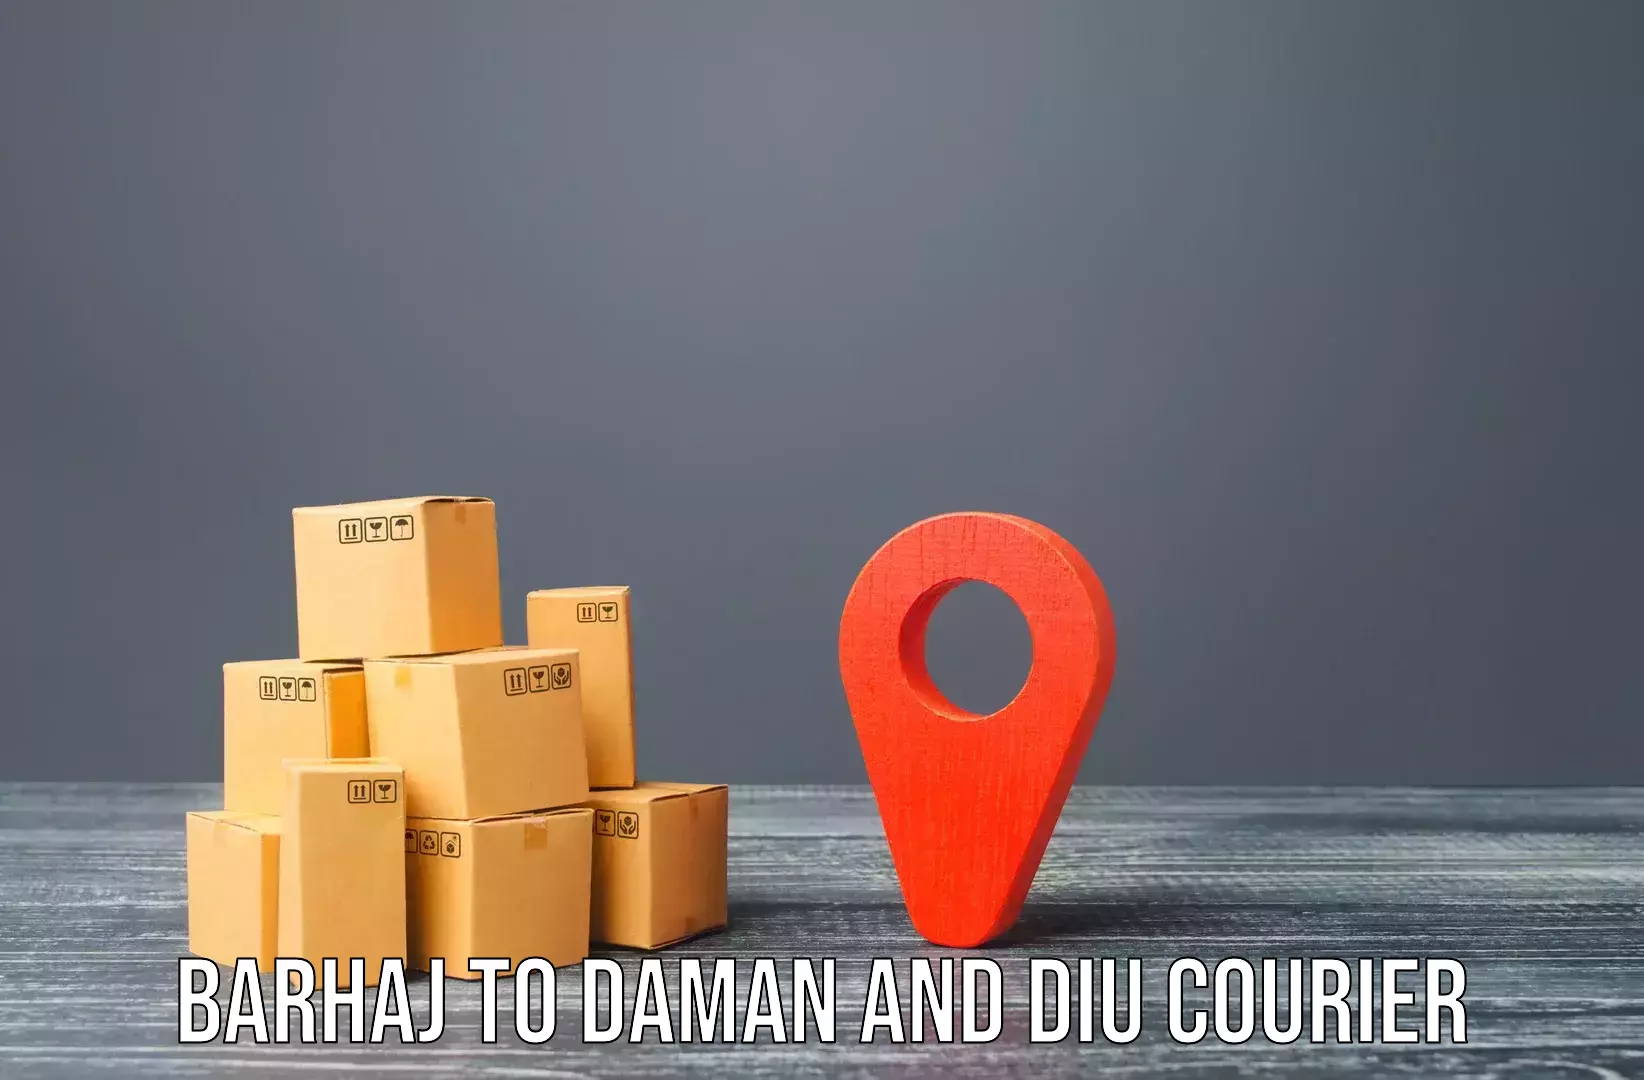 Advanced moving solutions Barhaj to Daman